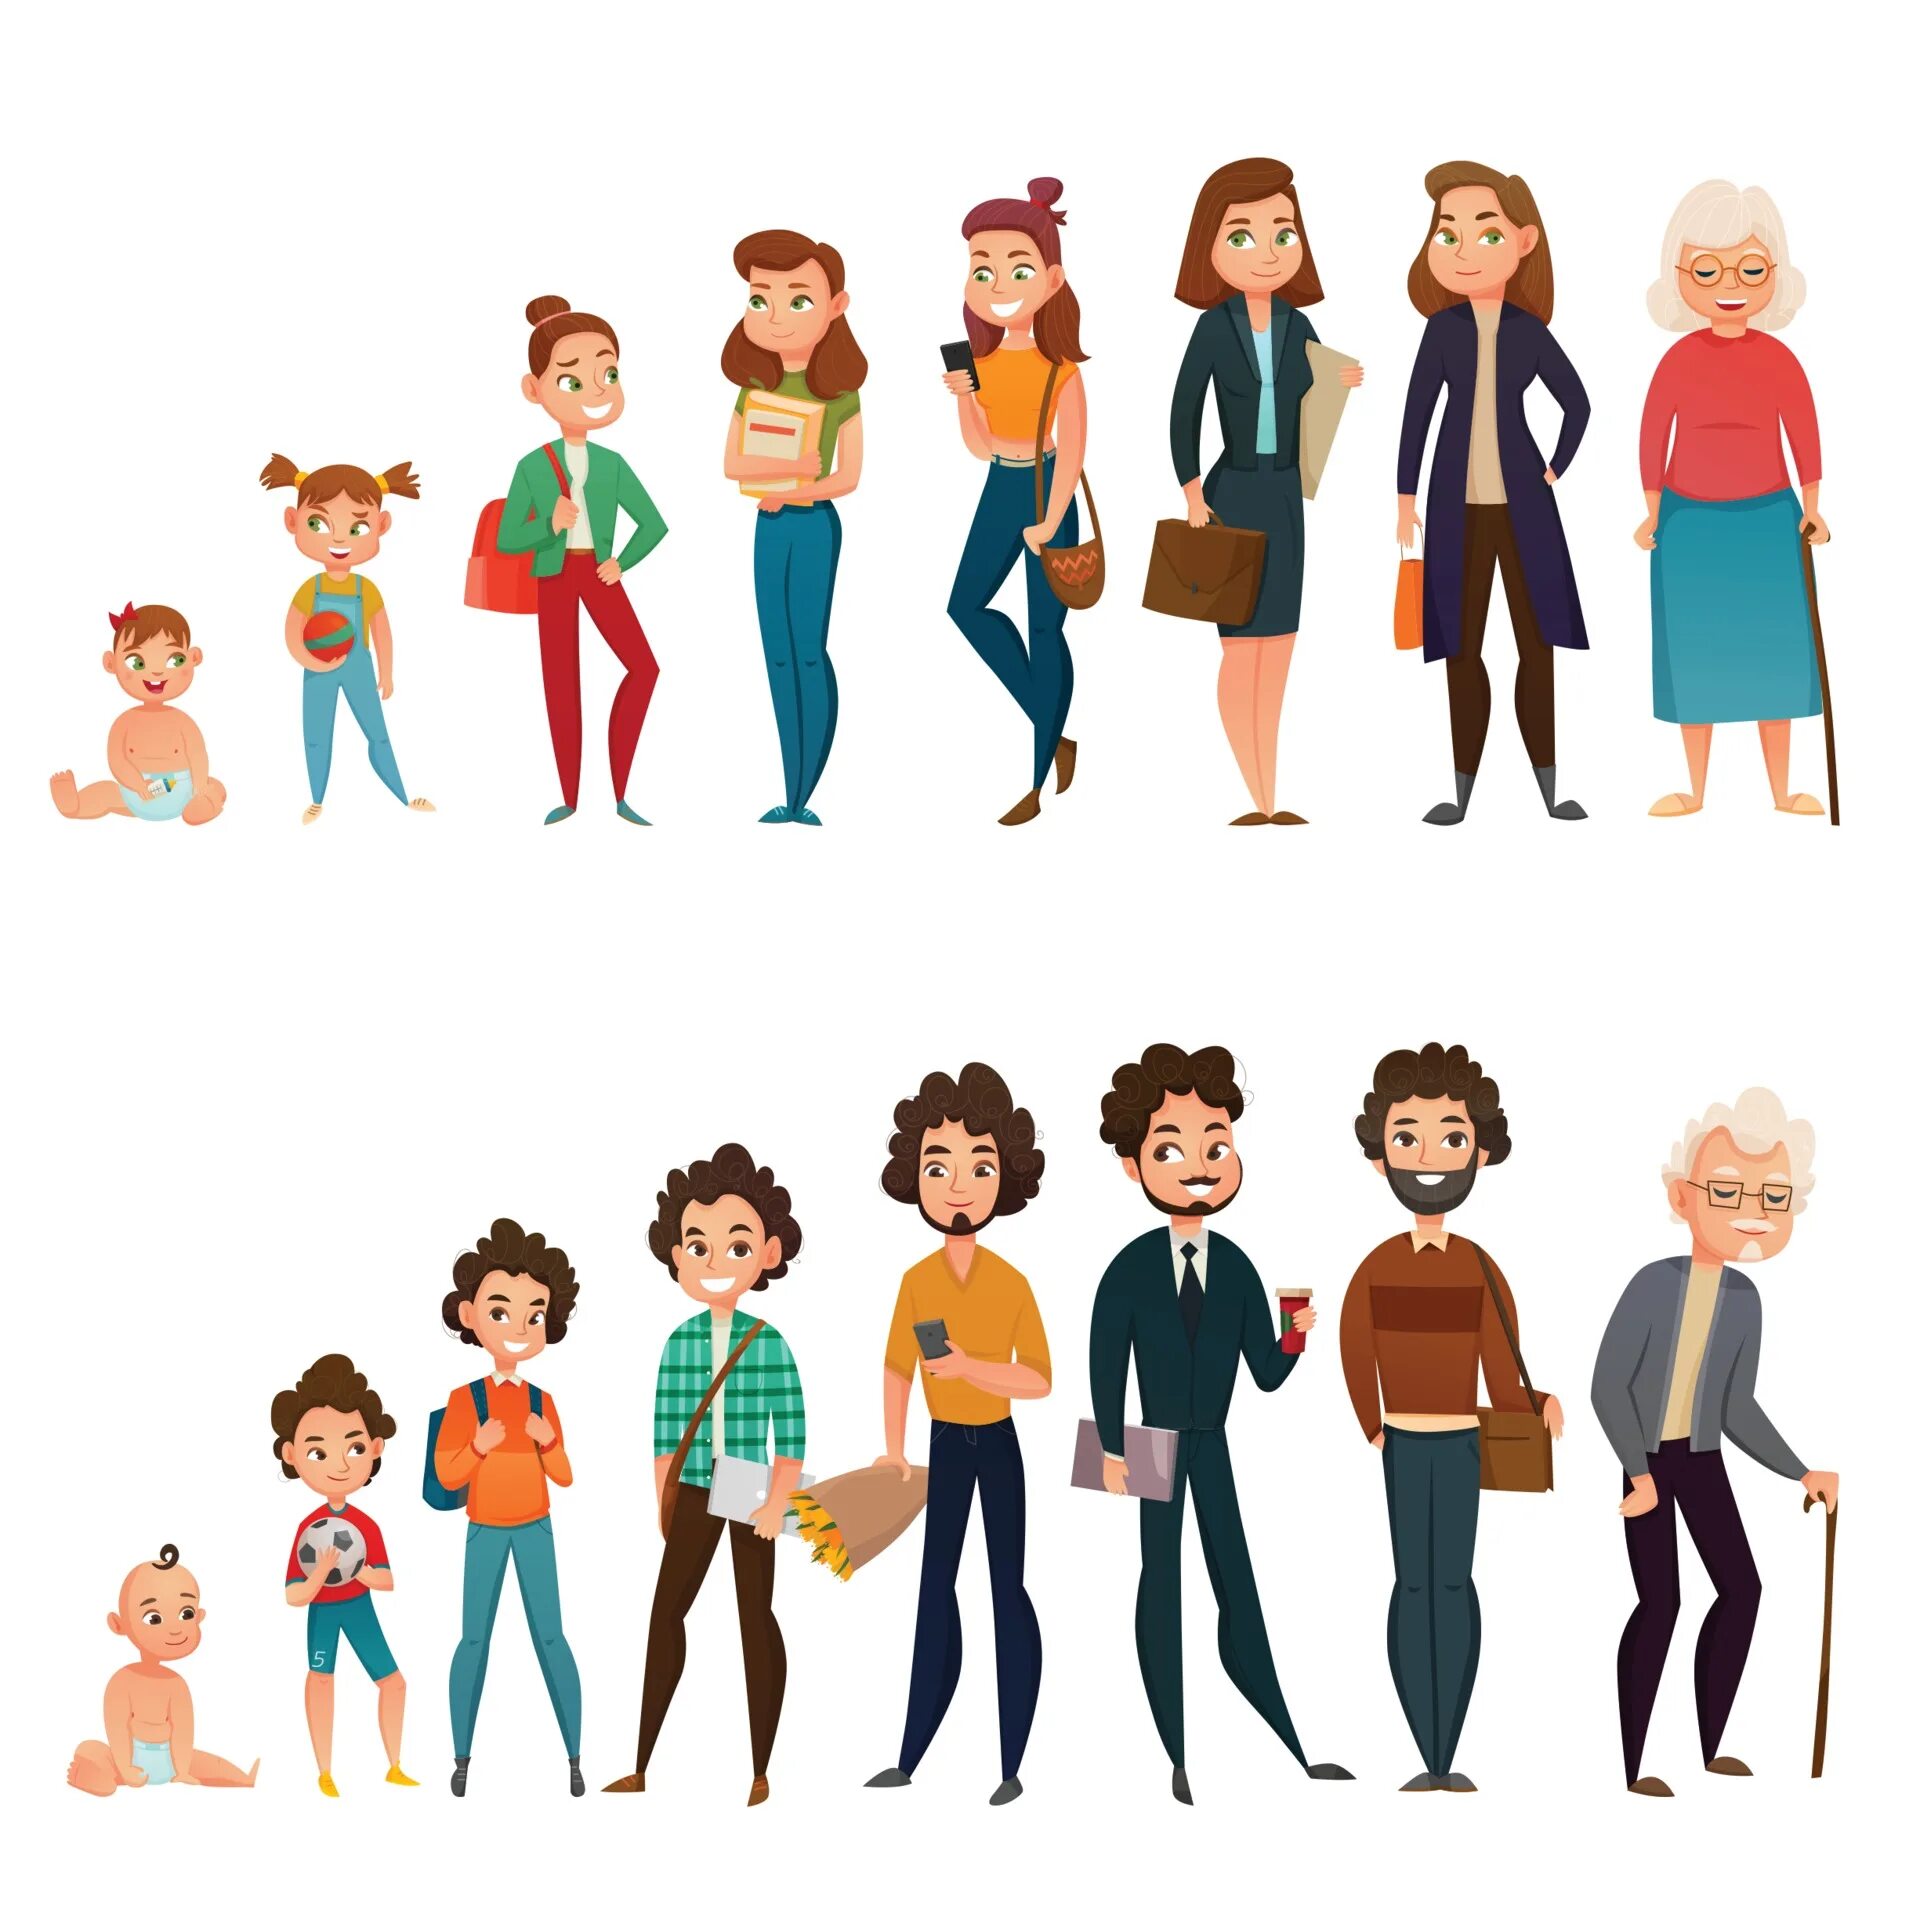 Иллюстрации людей разных возрастов. Этапы взросления человека. Персонаж в разном возрасте. Взросление человека для детей. Отечественные произведения на тему взросления человека